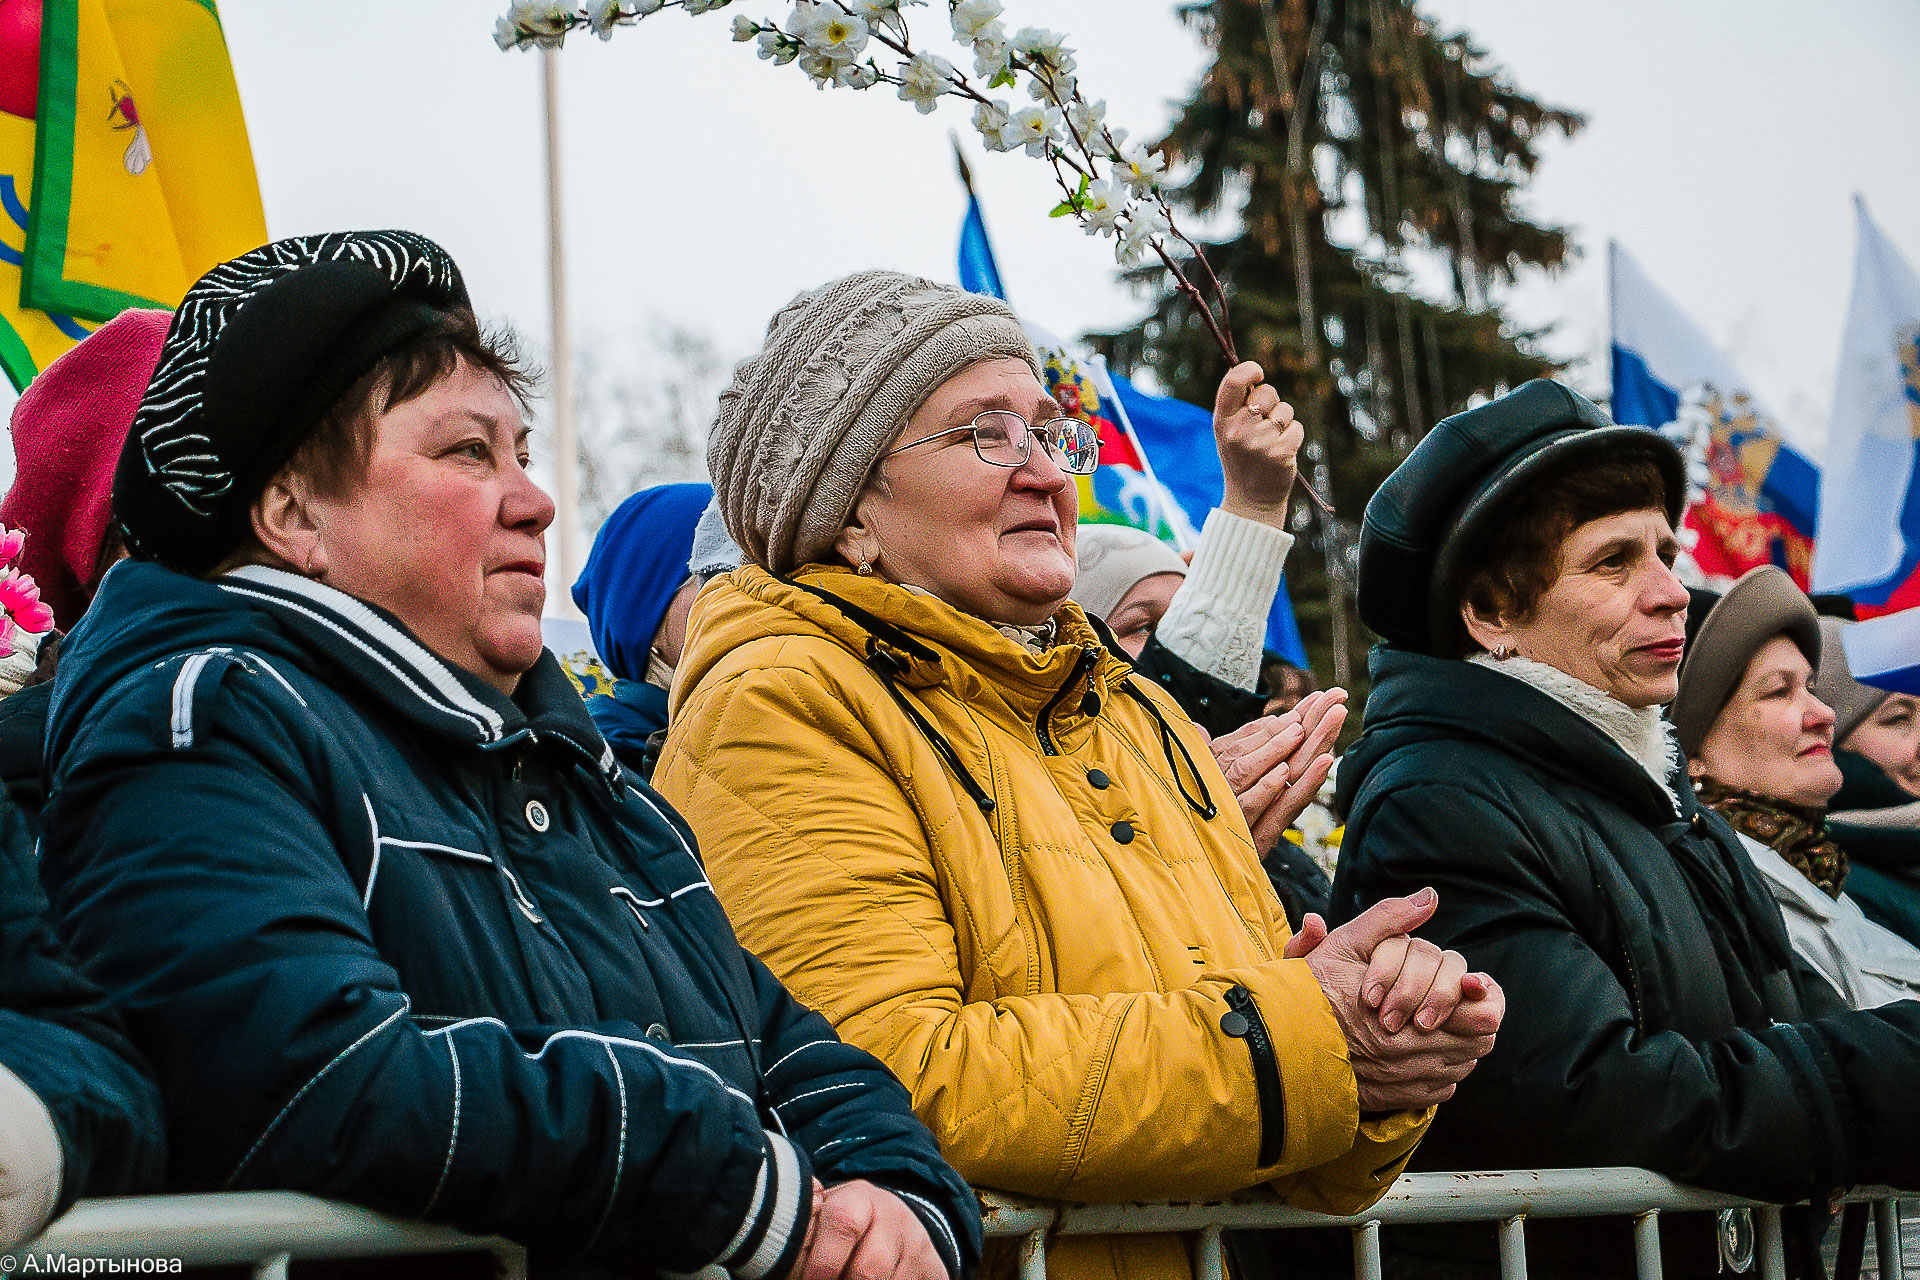 крымская весна митинг тамбов 2017 публика люди народ